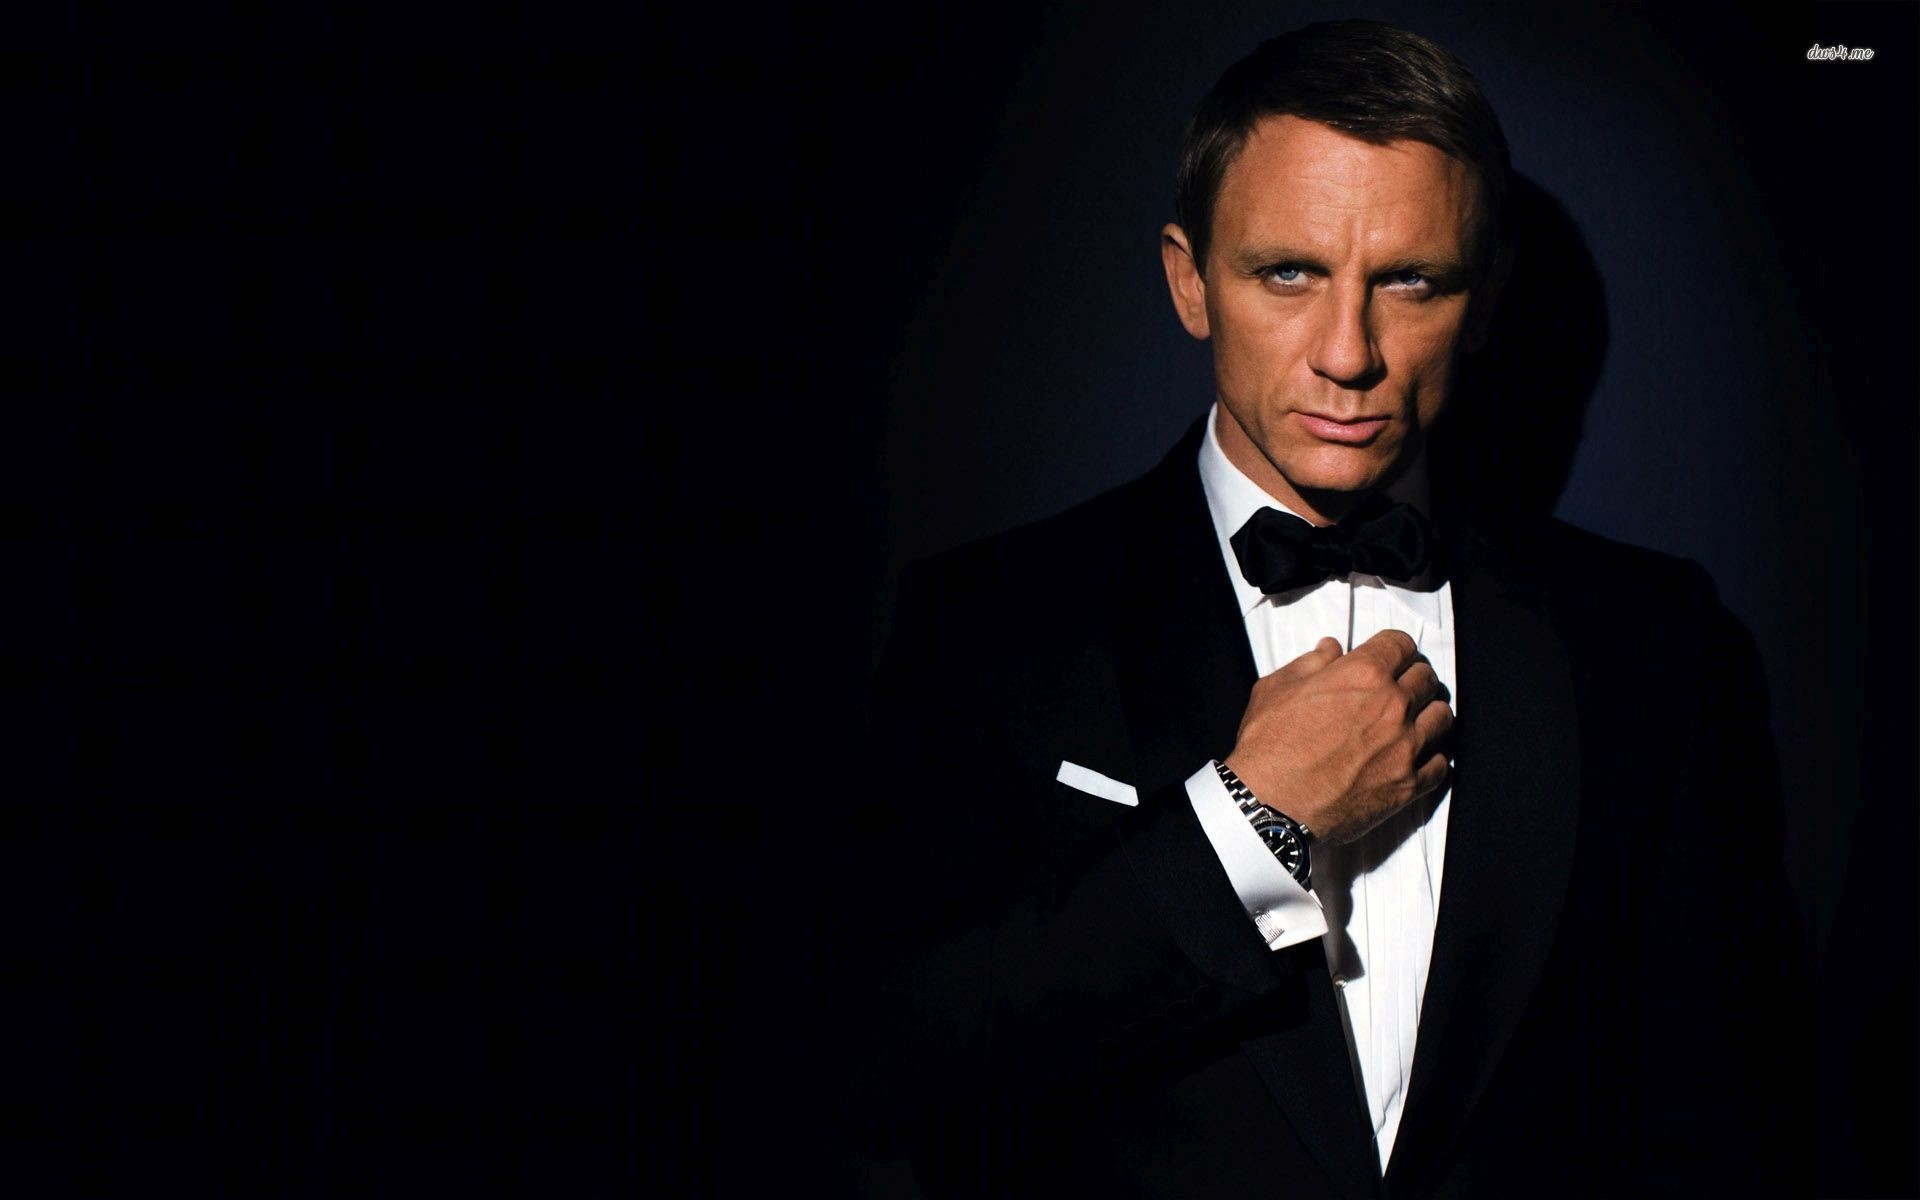 Wallpapers Wallpaper - Daniel Craig James Bond Film - HD Wallpaper 